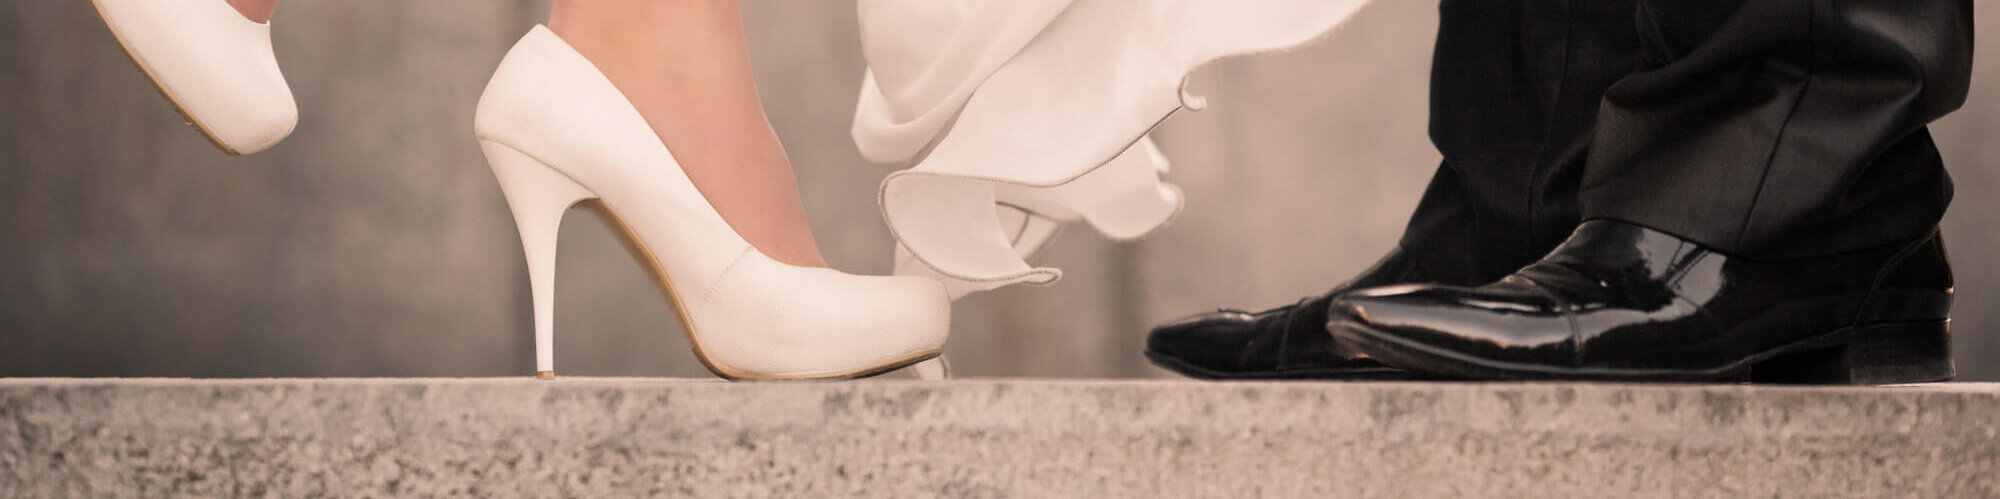 Schuhe der Braut und des Bräutigam